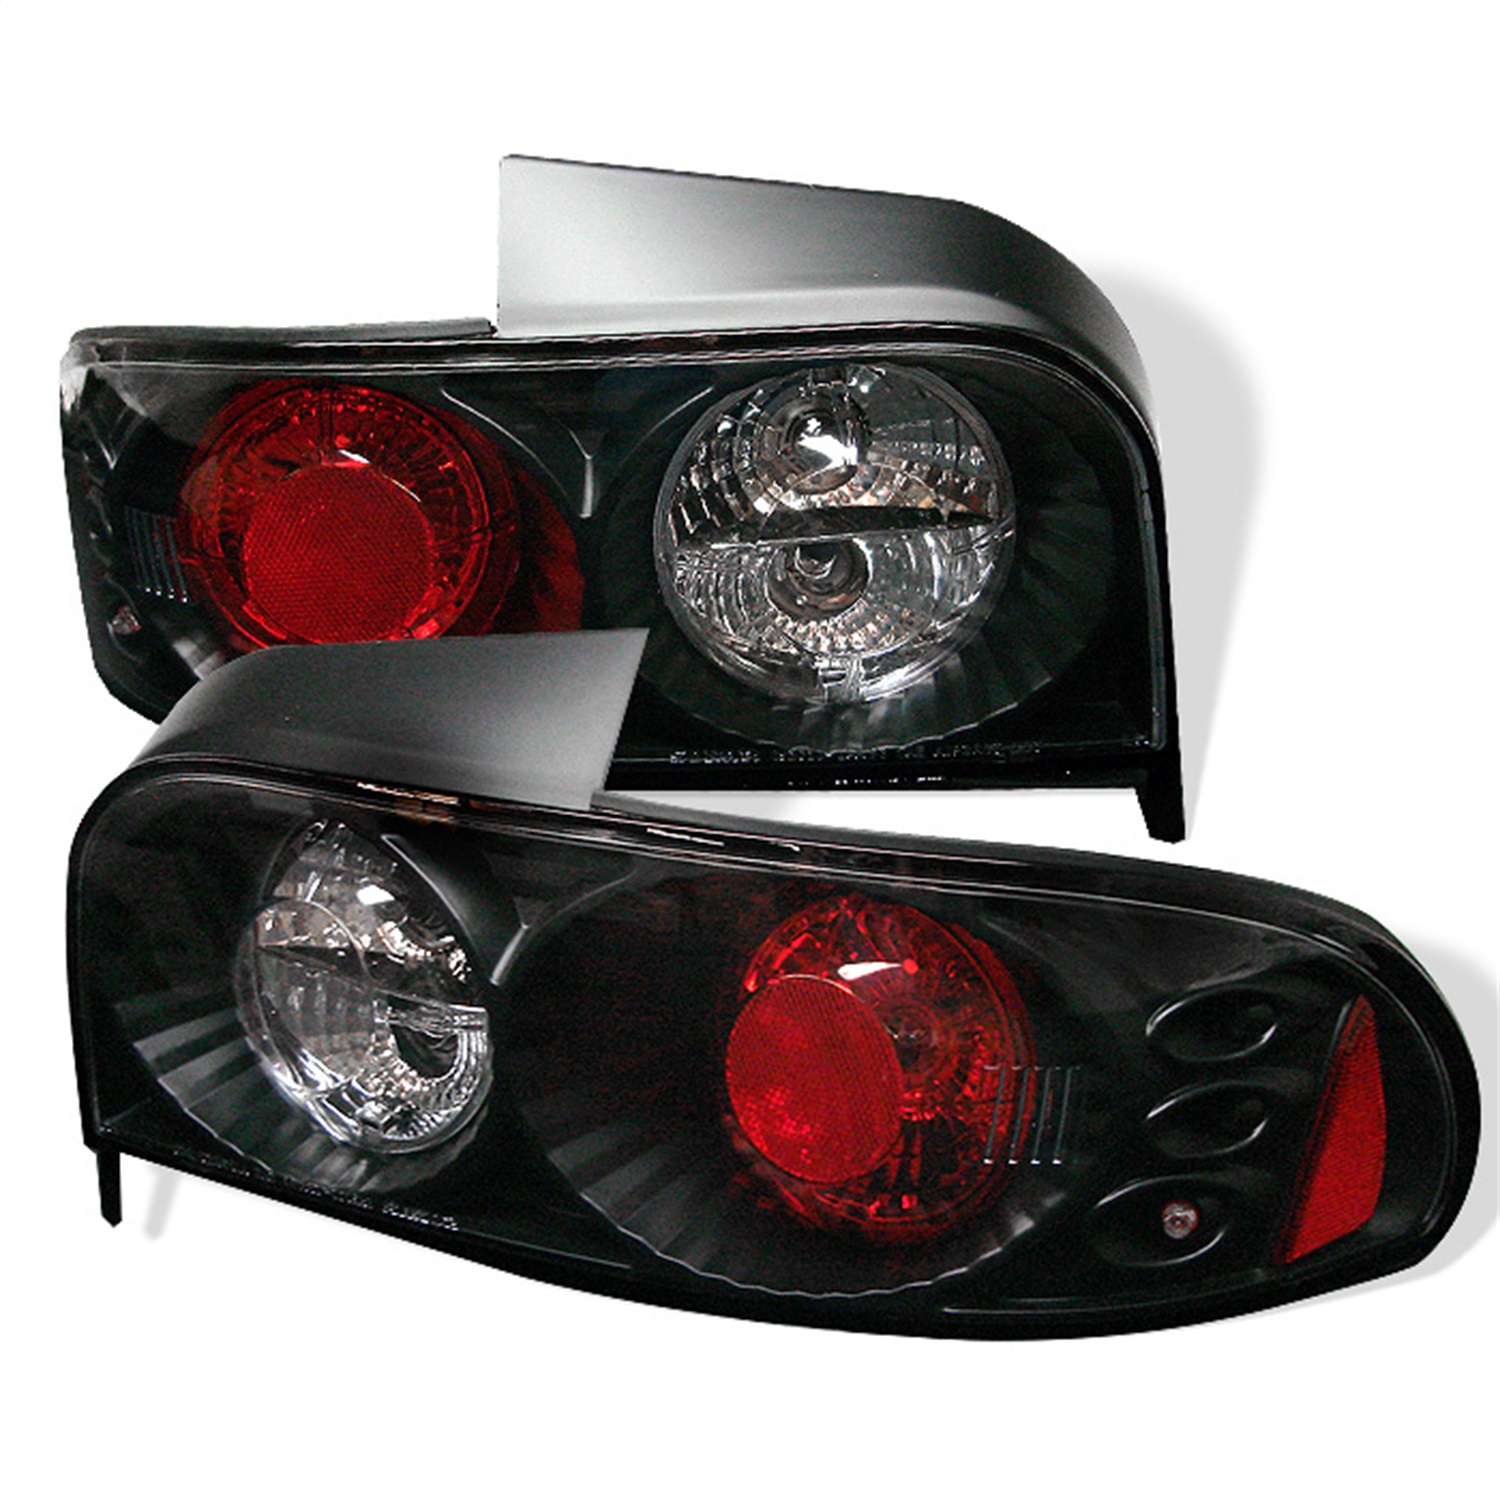 Spyder Auto 5007261 Euro Style Tail Lights Fits 93-01 Impreza